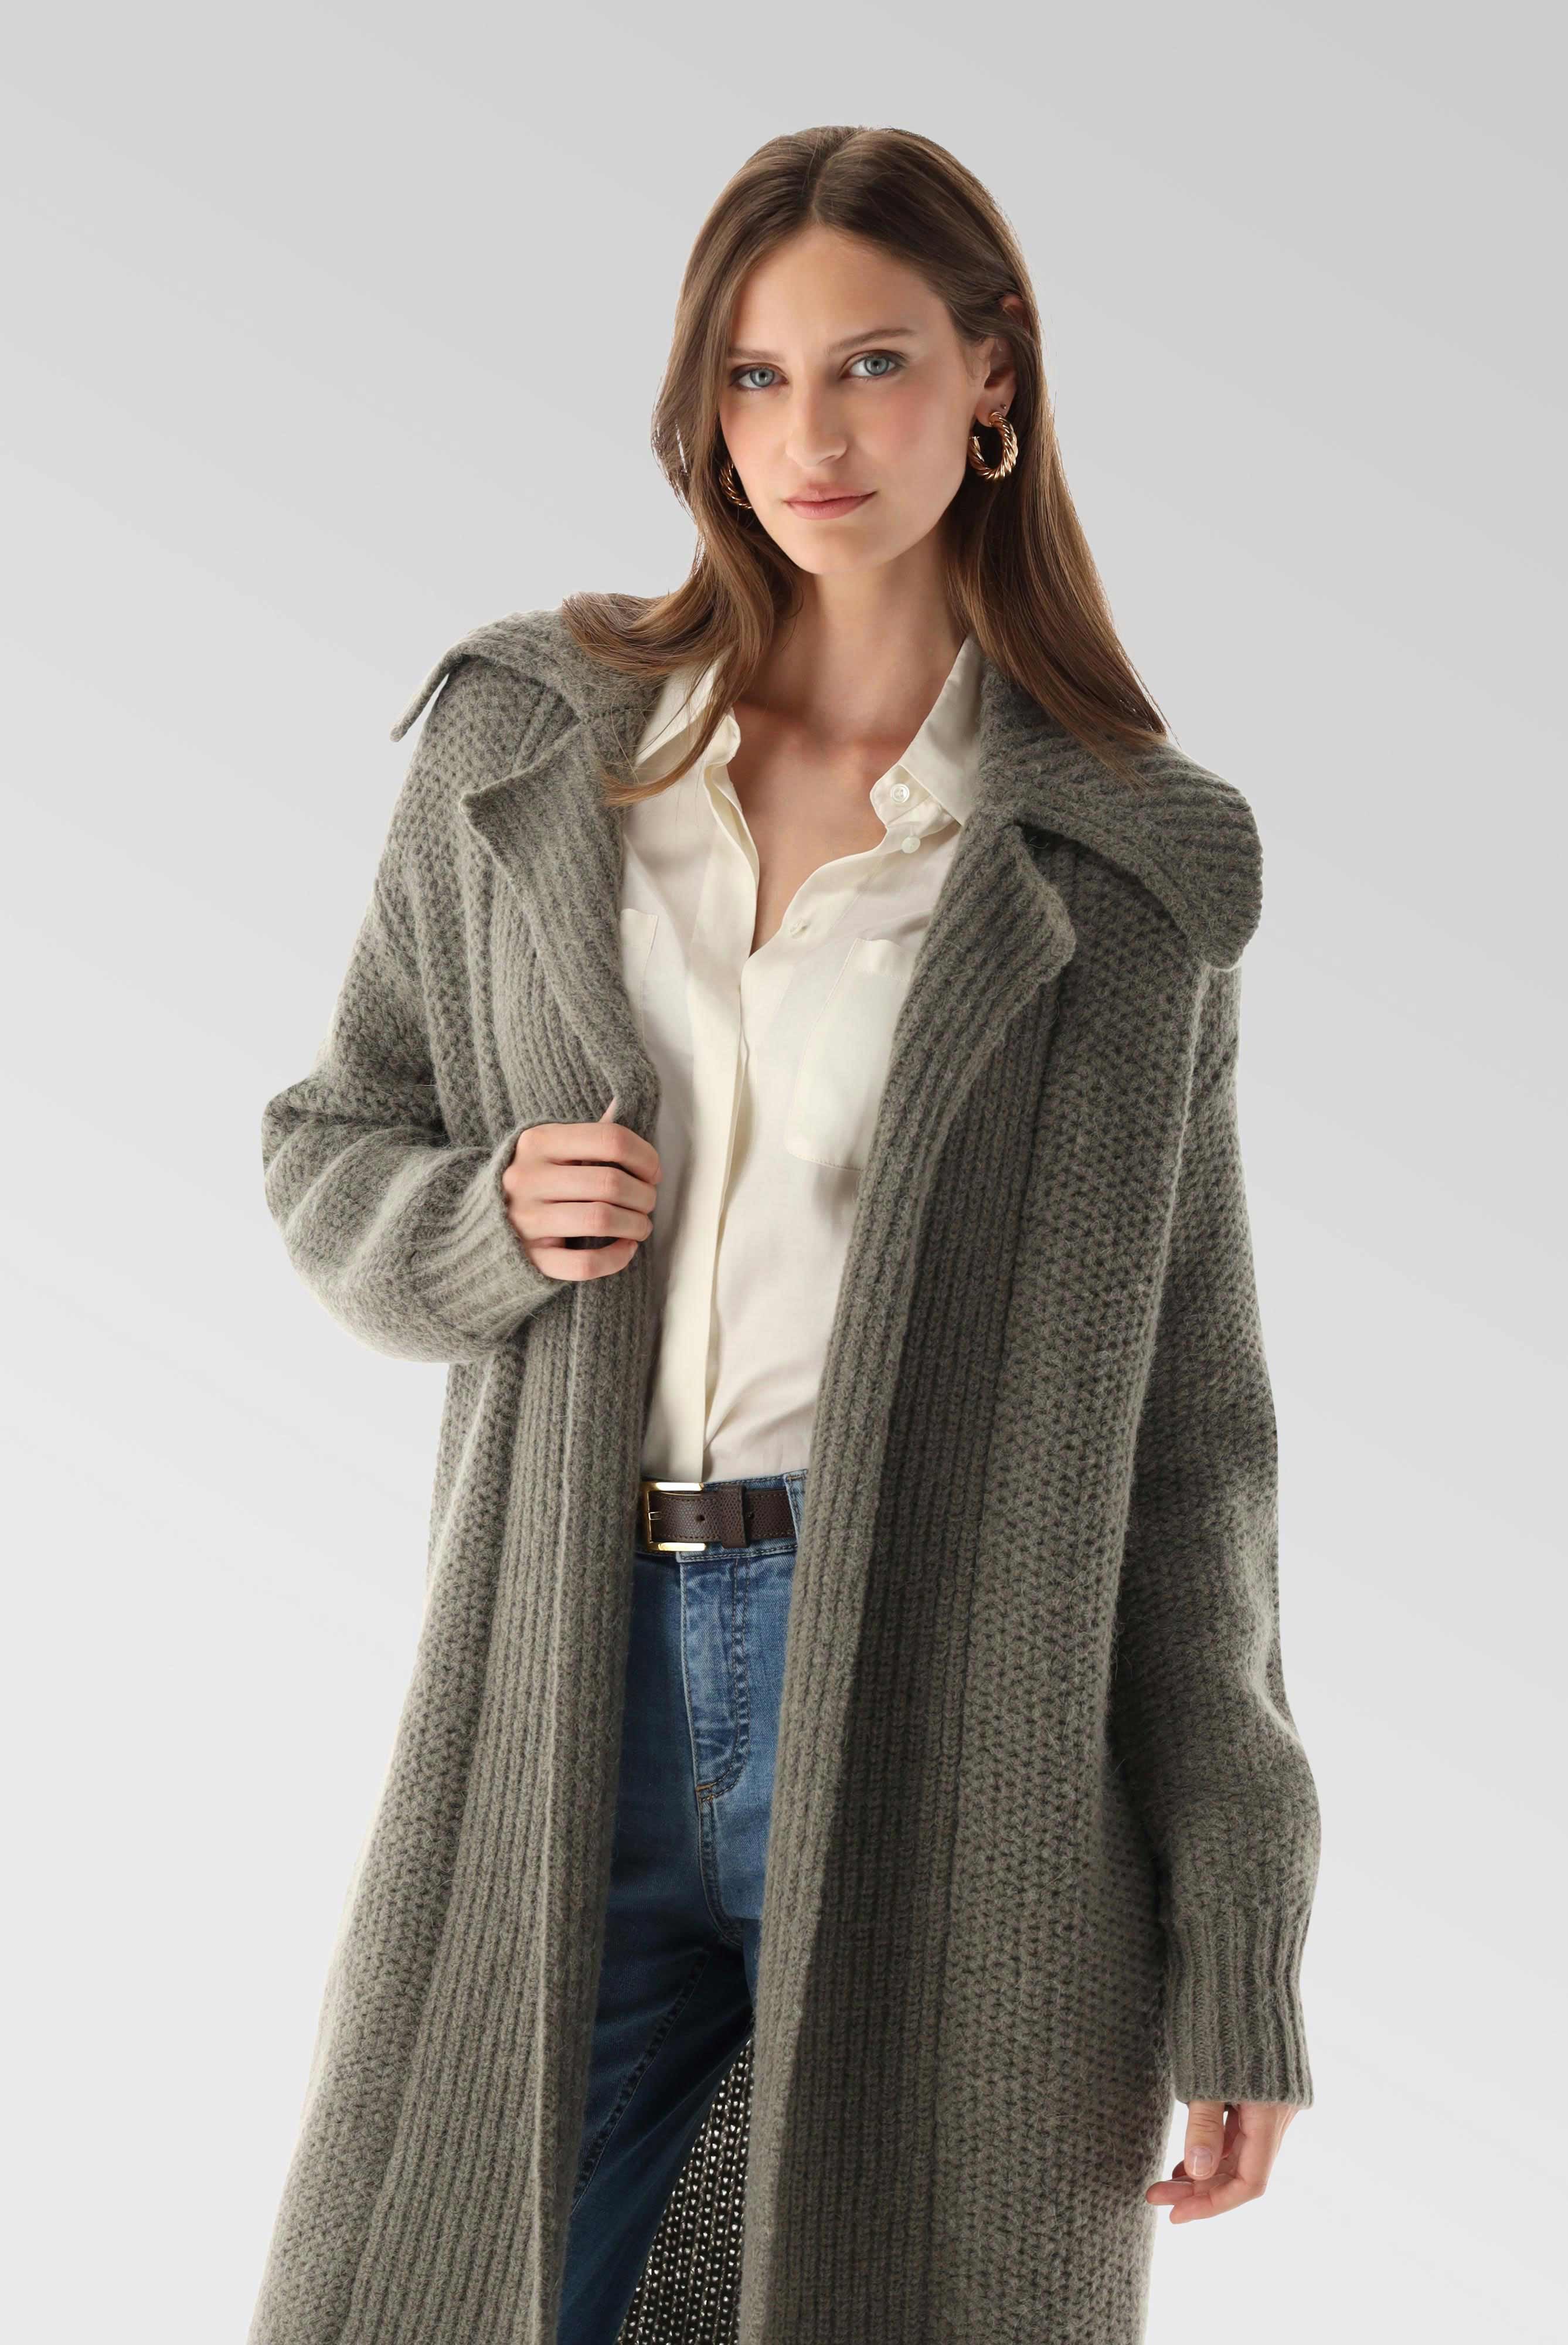 Coats+Knit Jacket with Alpaca+09.9942..S00227.960.XS